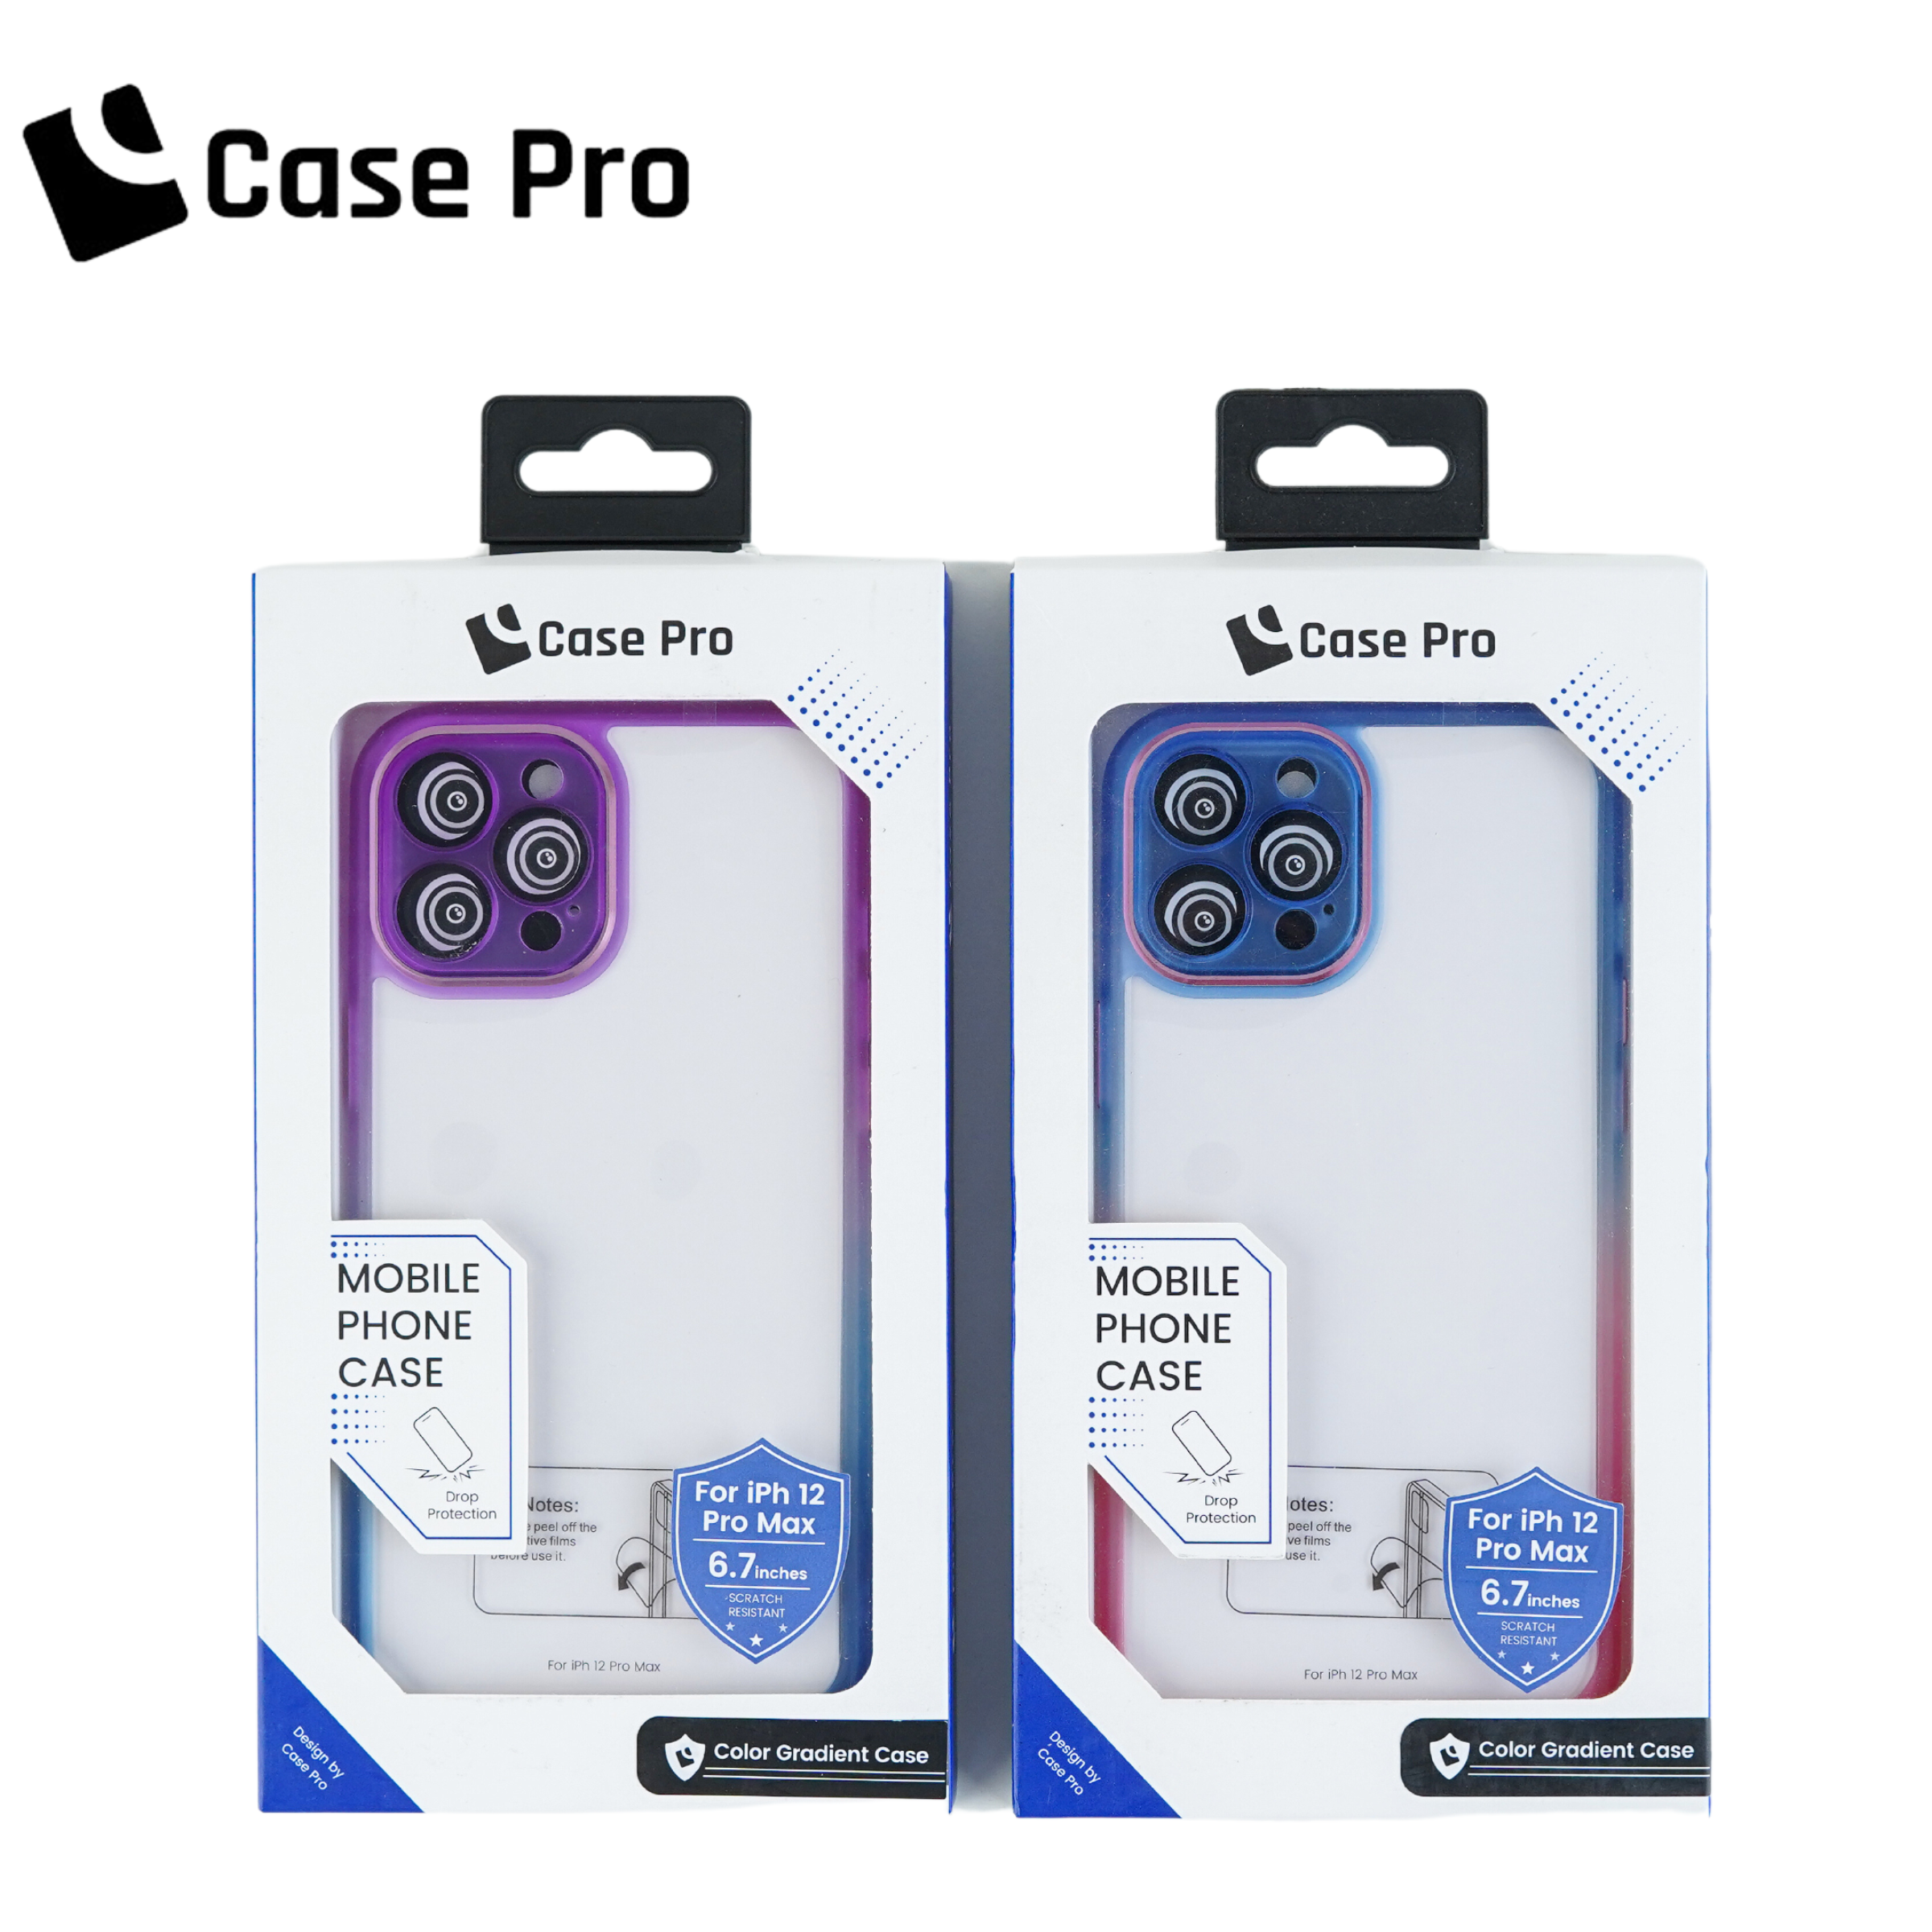 CASE PRO iPhone 12 Pro Max Case (Color Gradient)